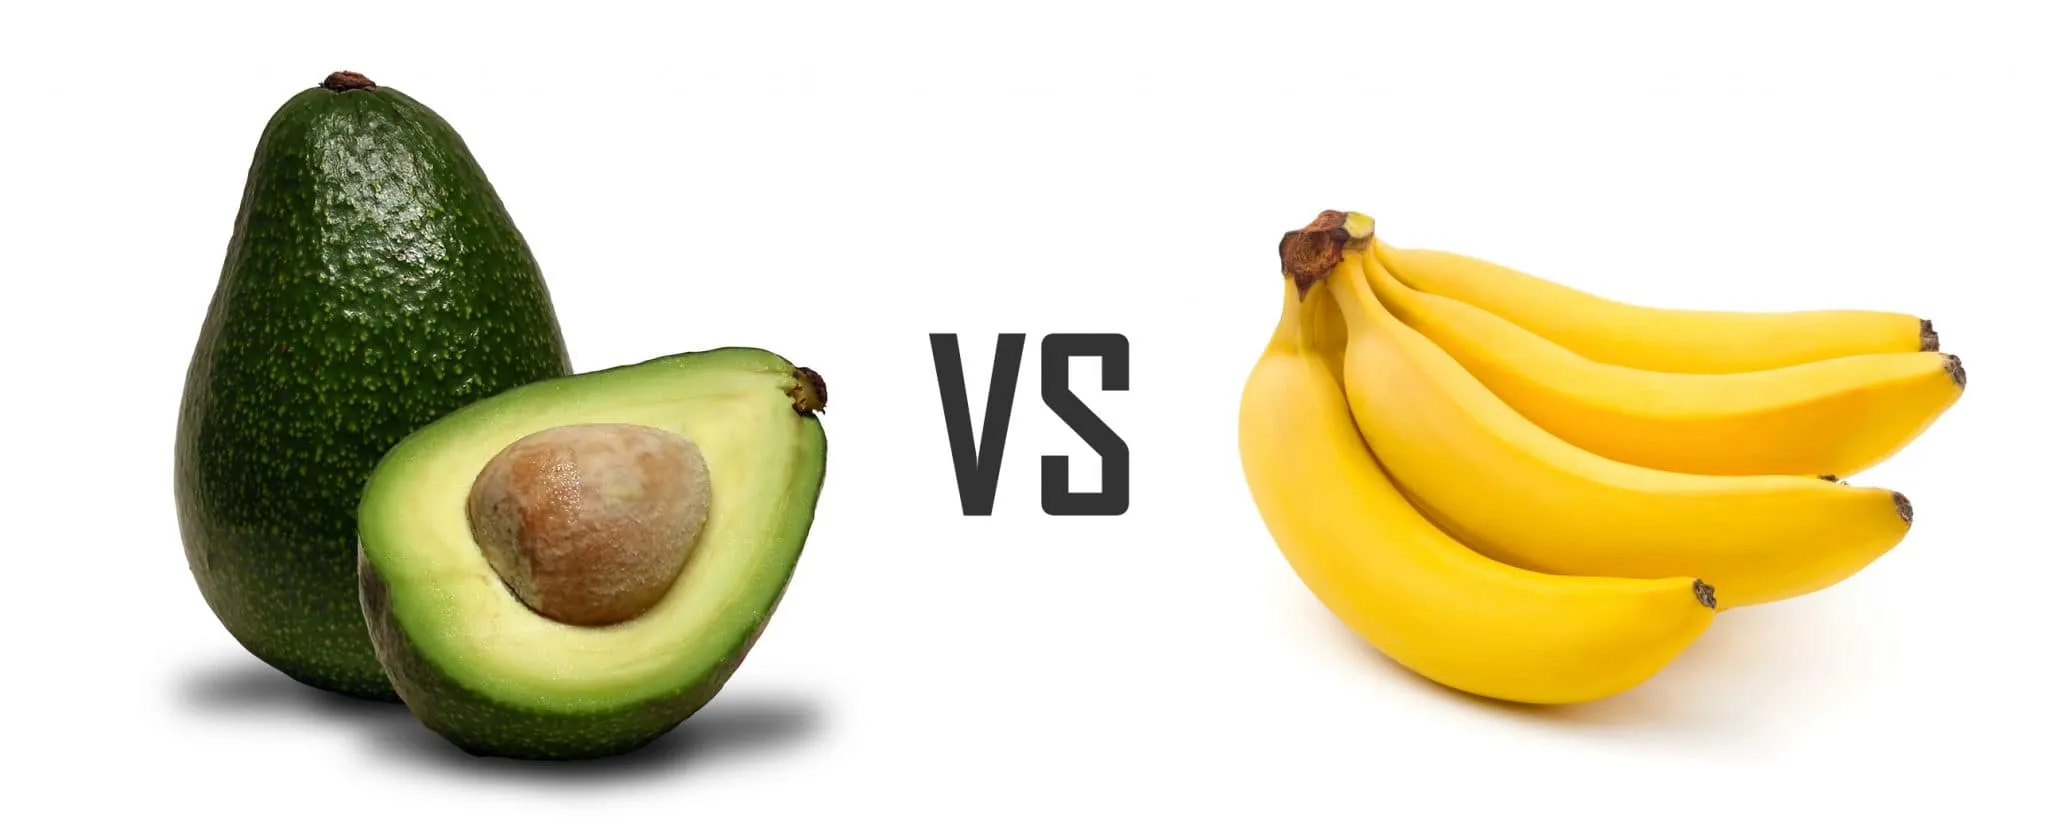 banana and avocado similarities